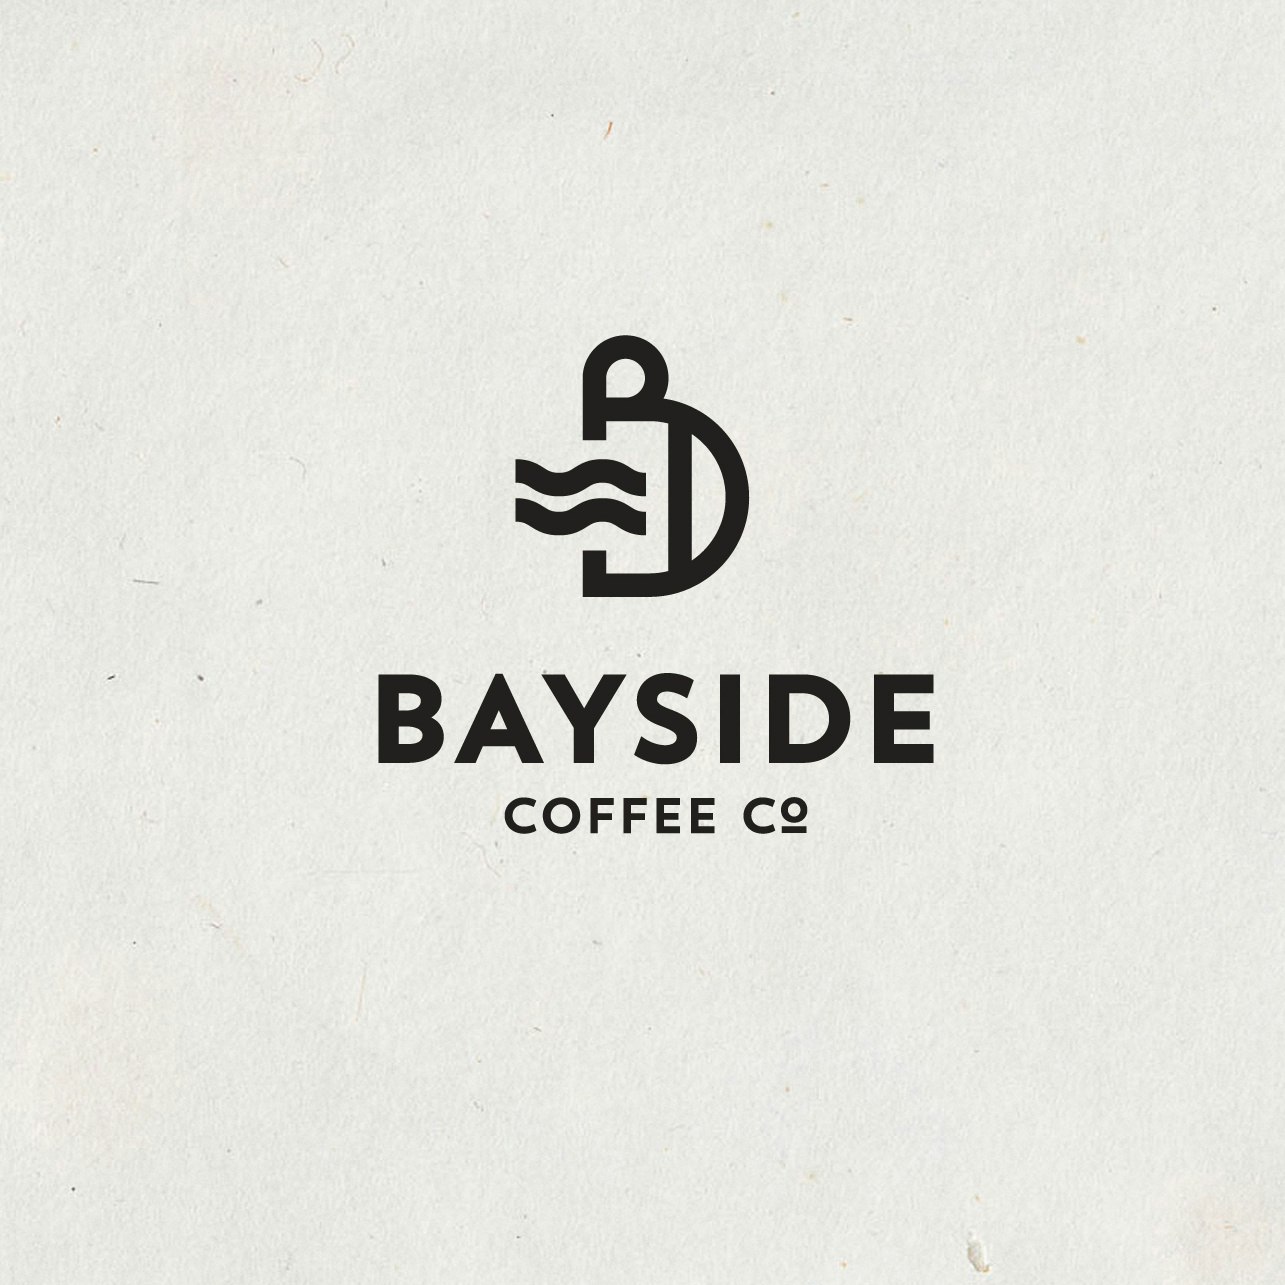 Diseño de logotipo de empresa de café con temática de playa